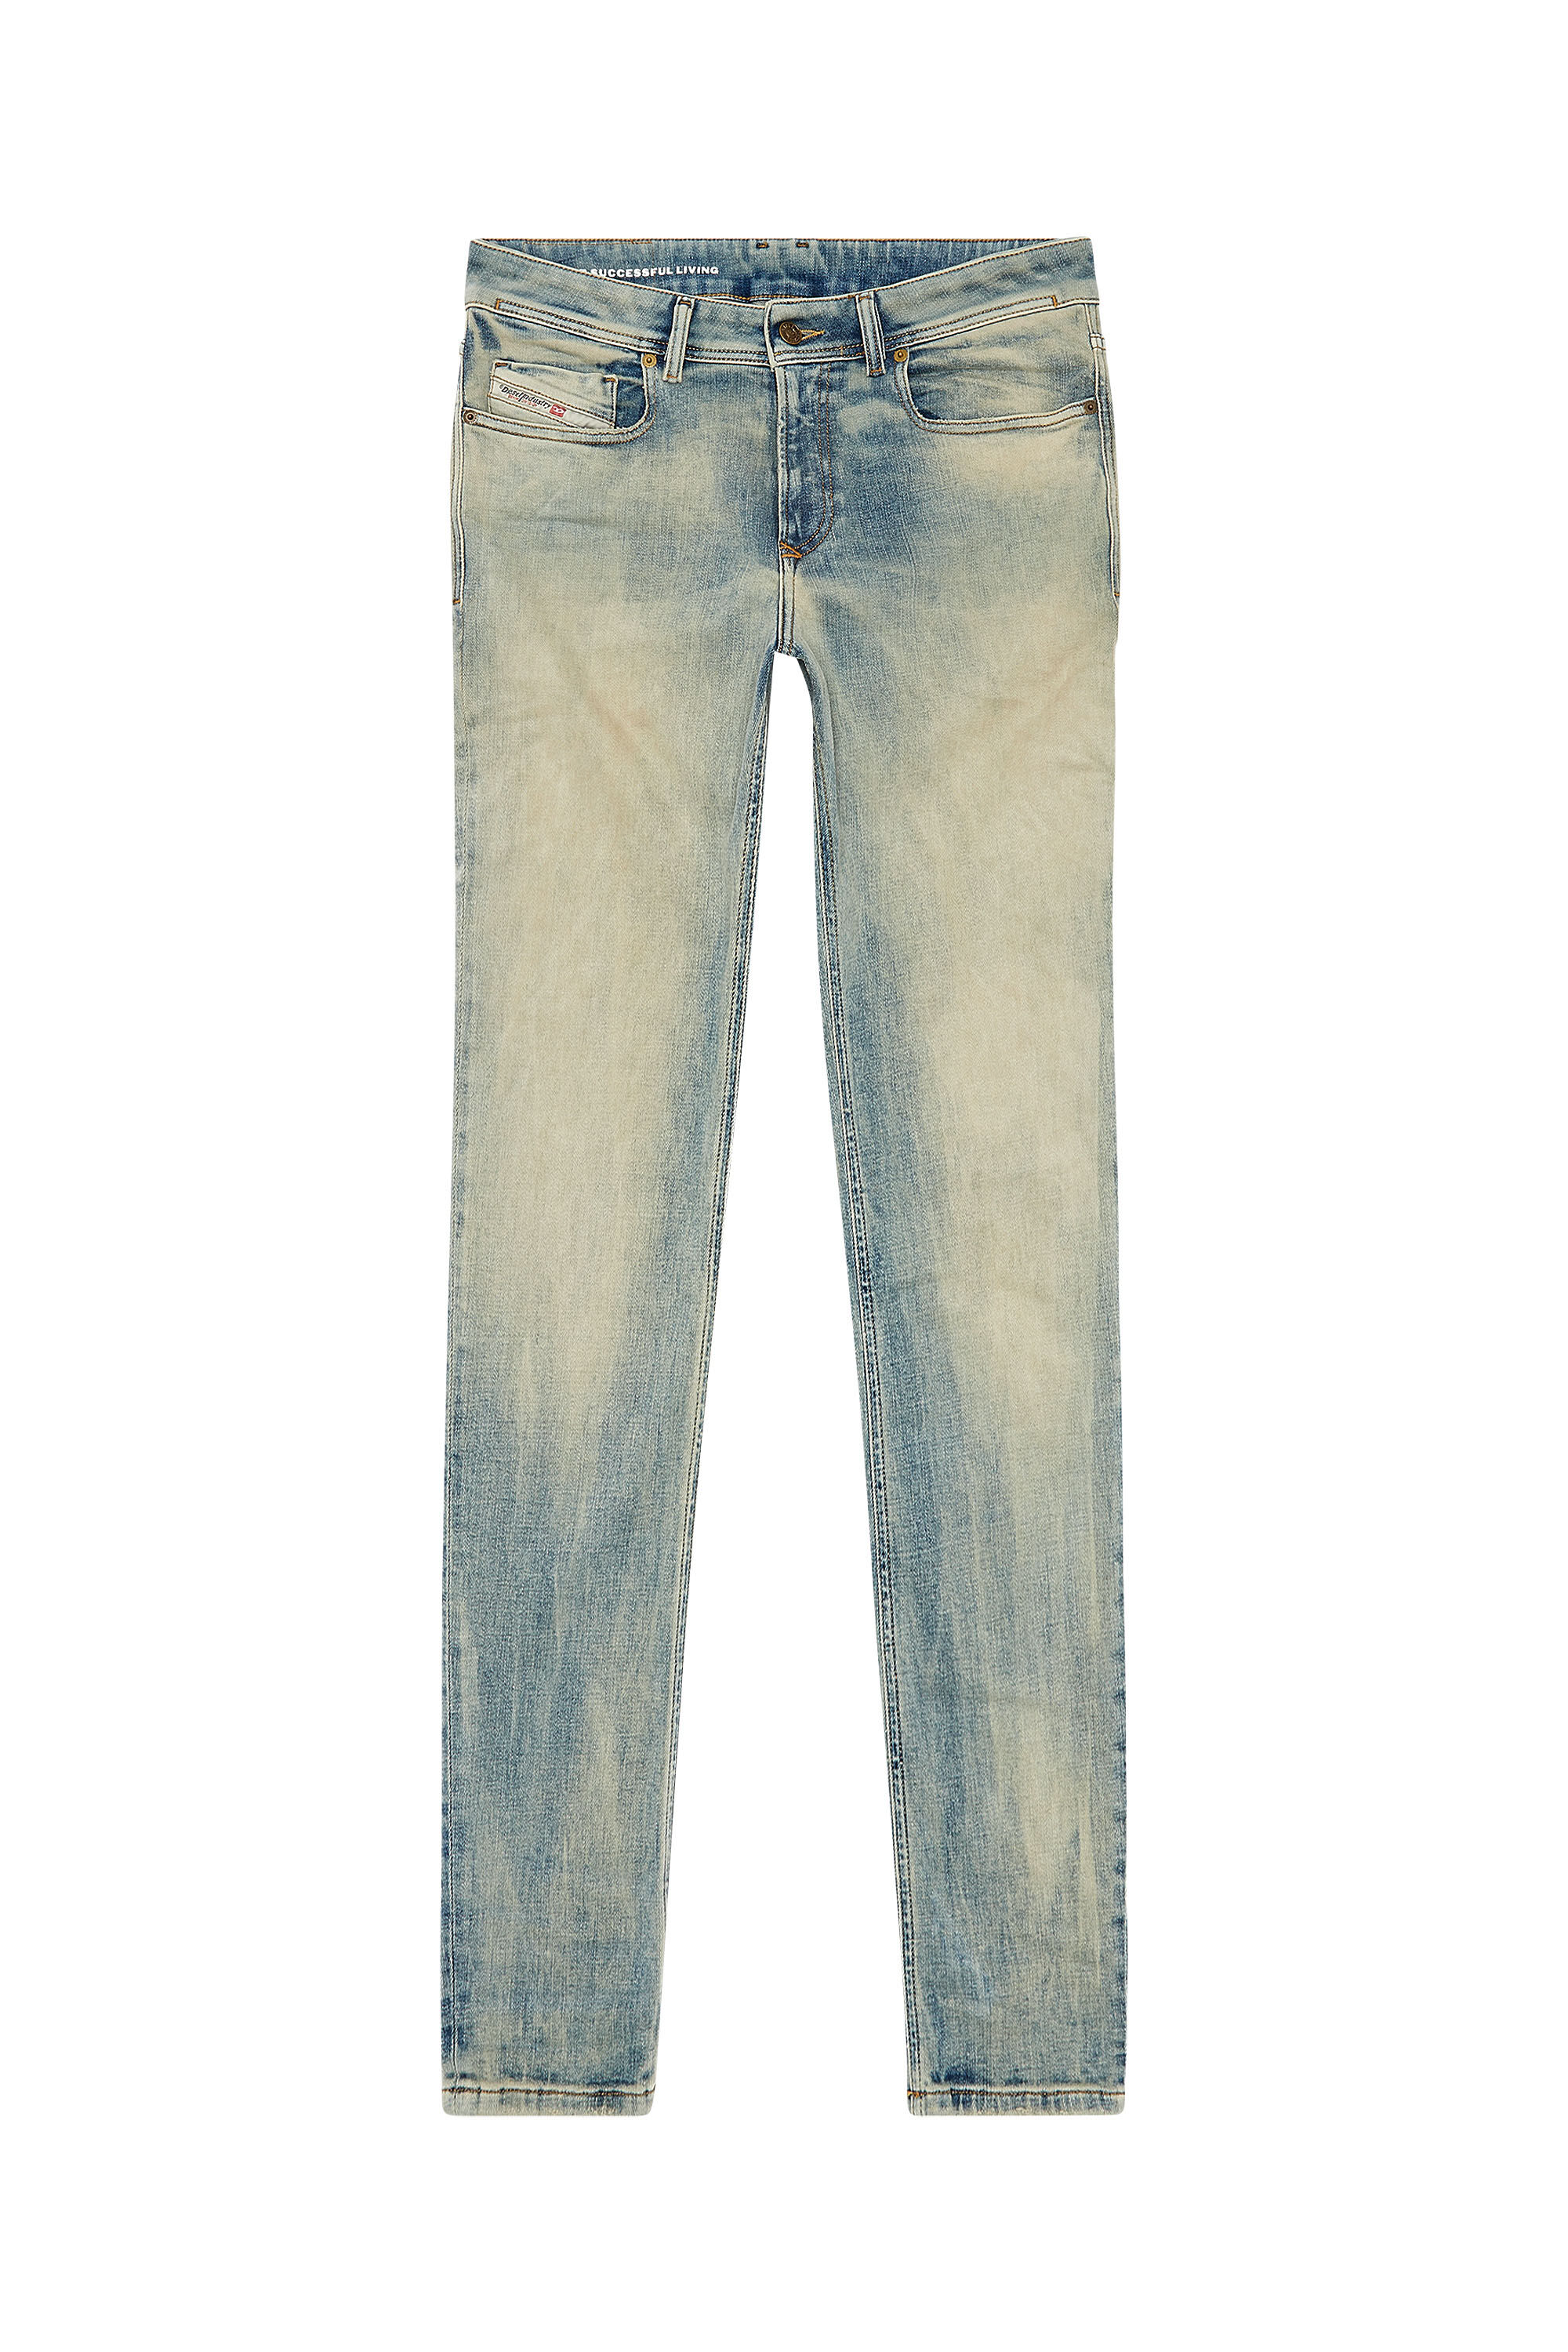 Men's Skinny Jeans | Light blue | Diesel 1979 Sleenker